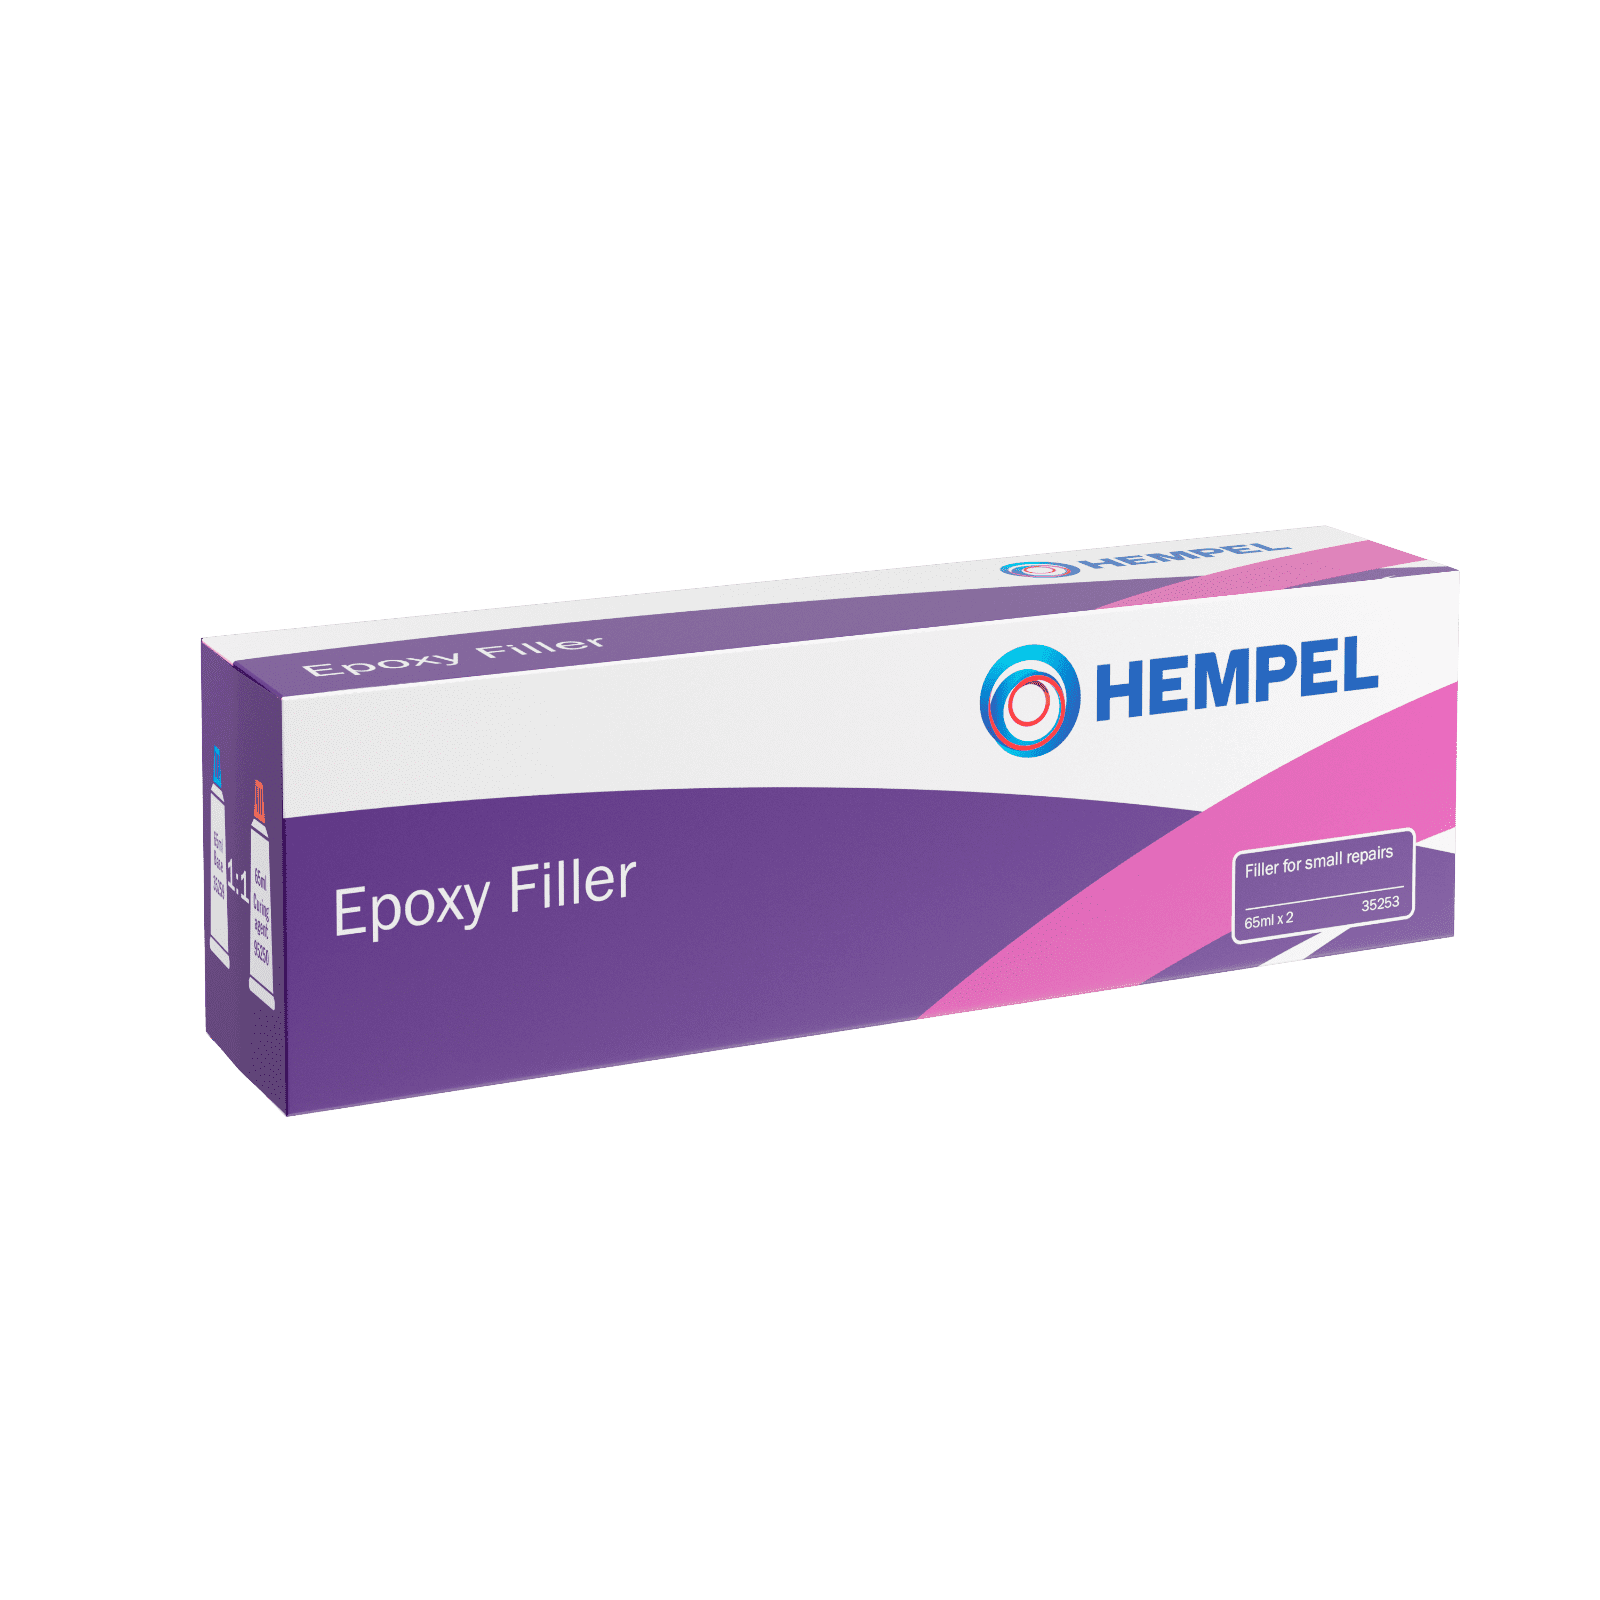 Hempel Epoxy Filler 35253 - 130ml Tube